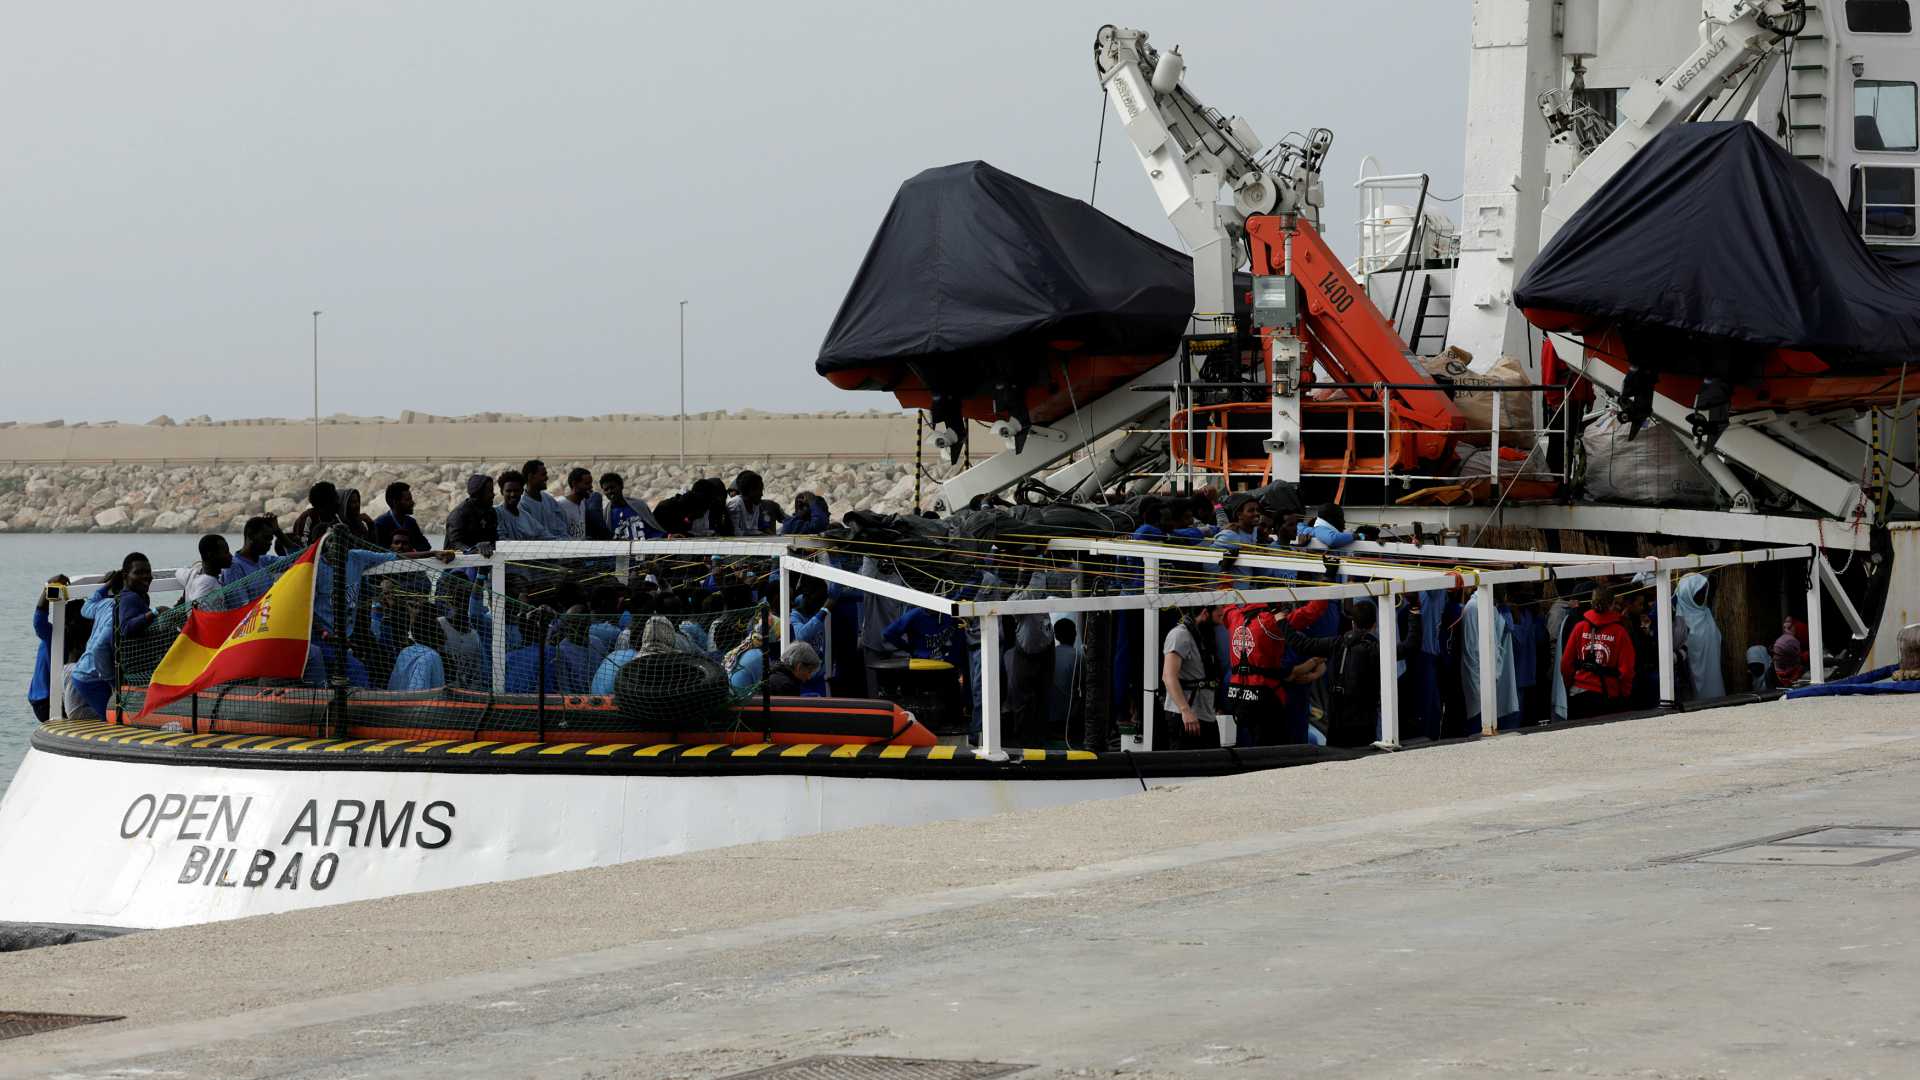 Italia retiene al barco de Open Arms tras rescatar a 218 migrantes en el Mediterráneo